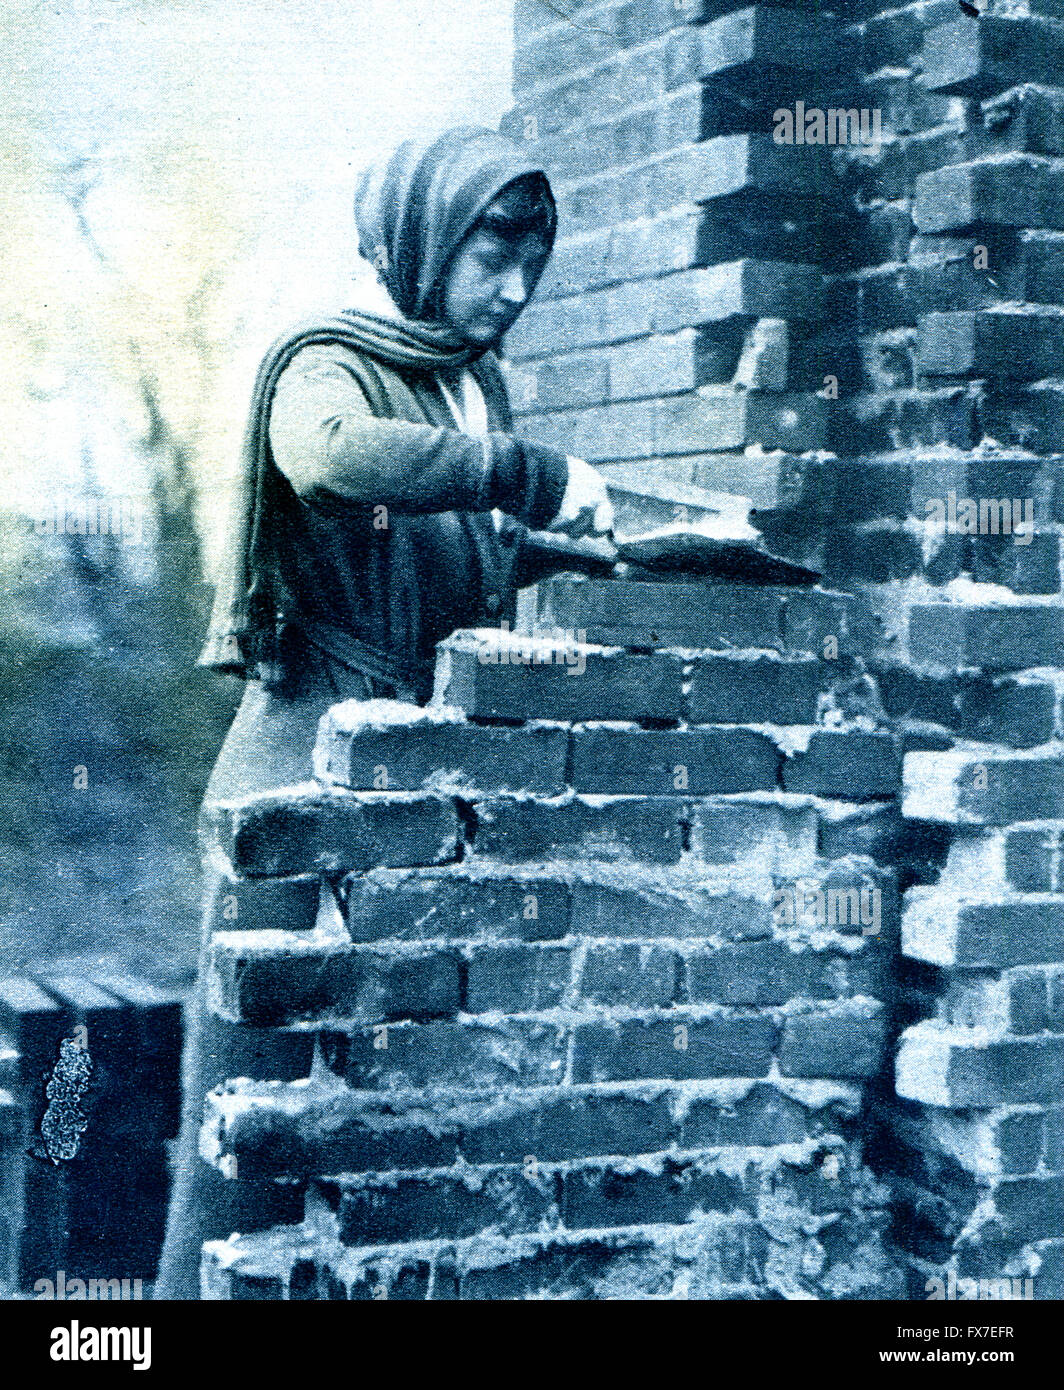 Le chef de manoeuvre dans un village anglais - photo de grande guerre Magazine, vol. 156, UK, vers 1917 Banque D'Images